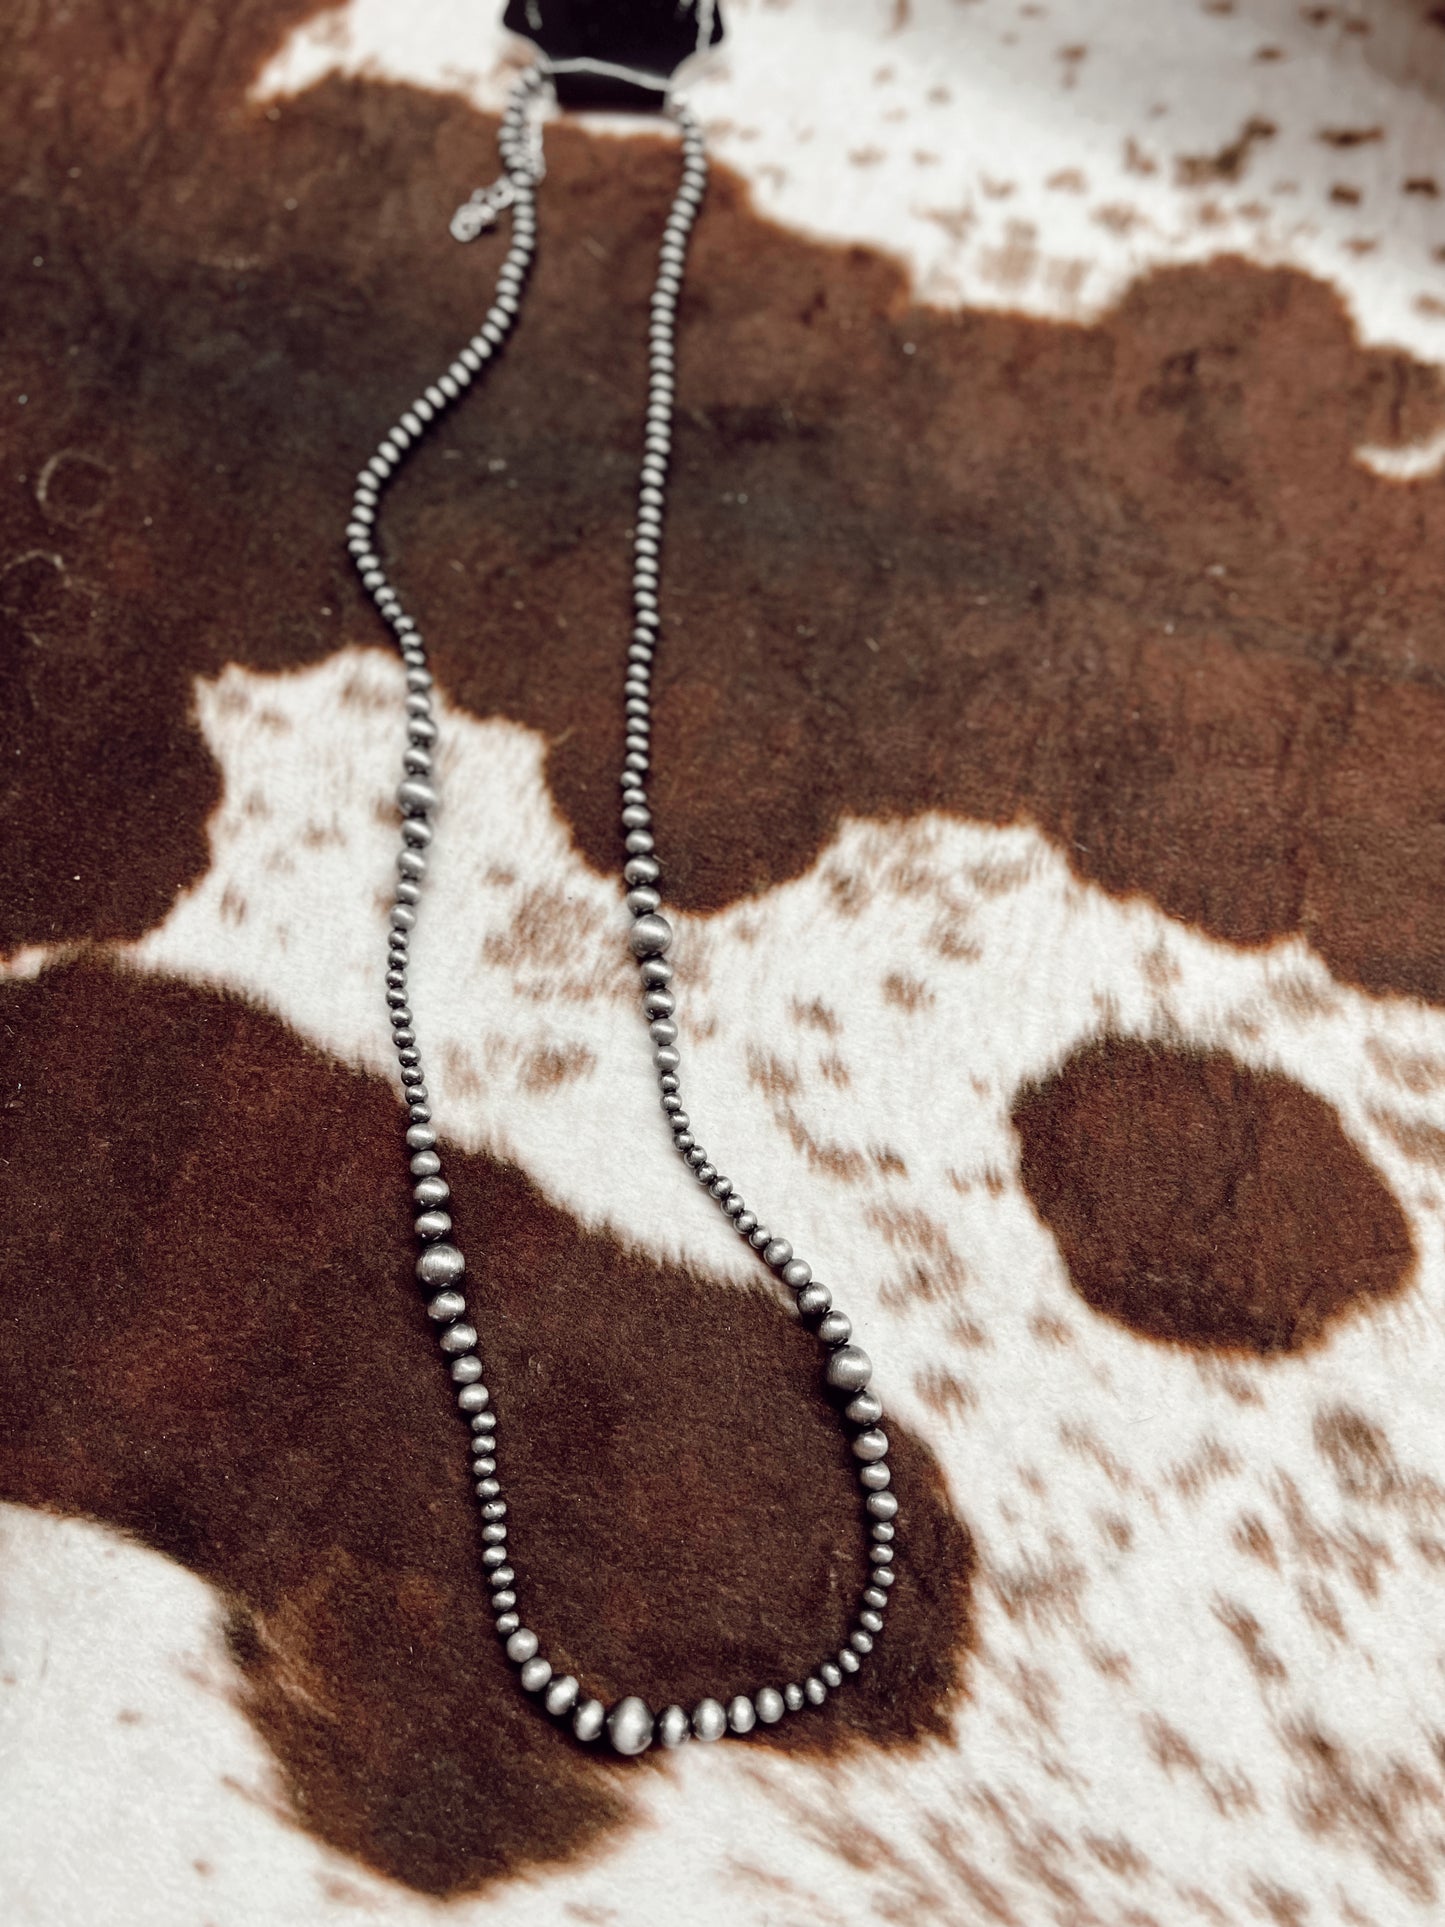 Hughson Navajo pearl necklace